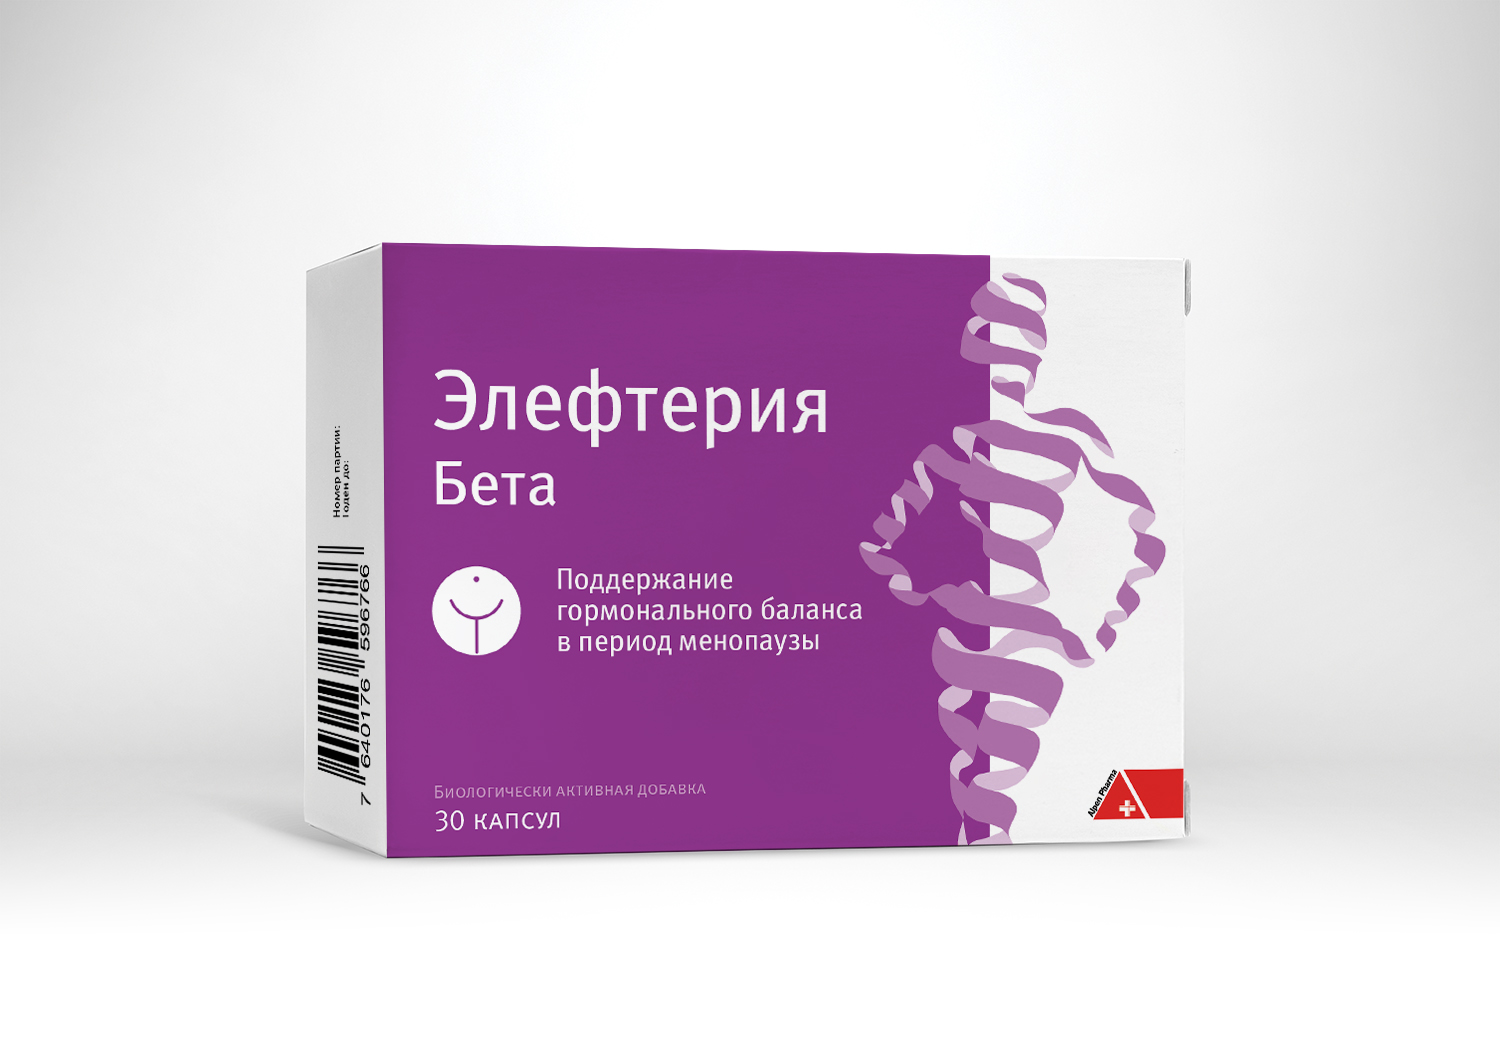 ელეფტერია ბეტა / Elefteria Beta